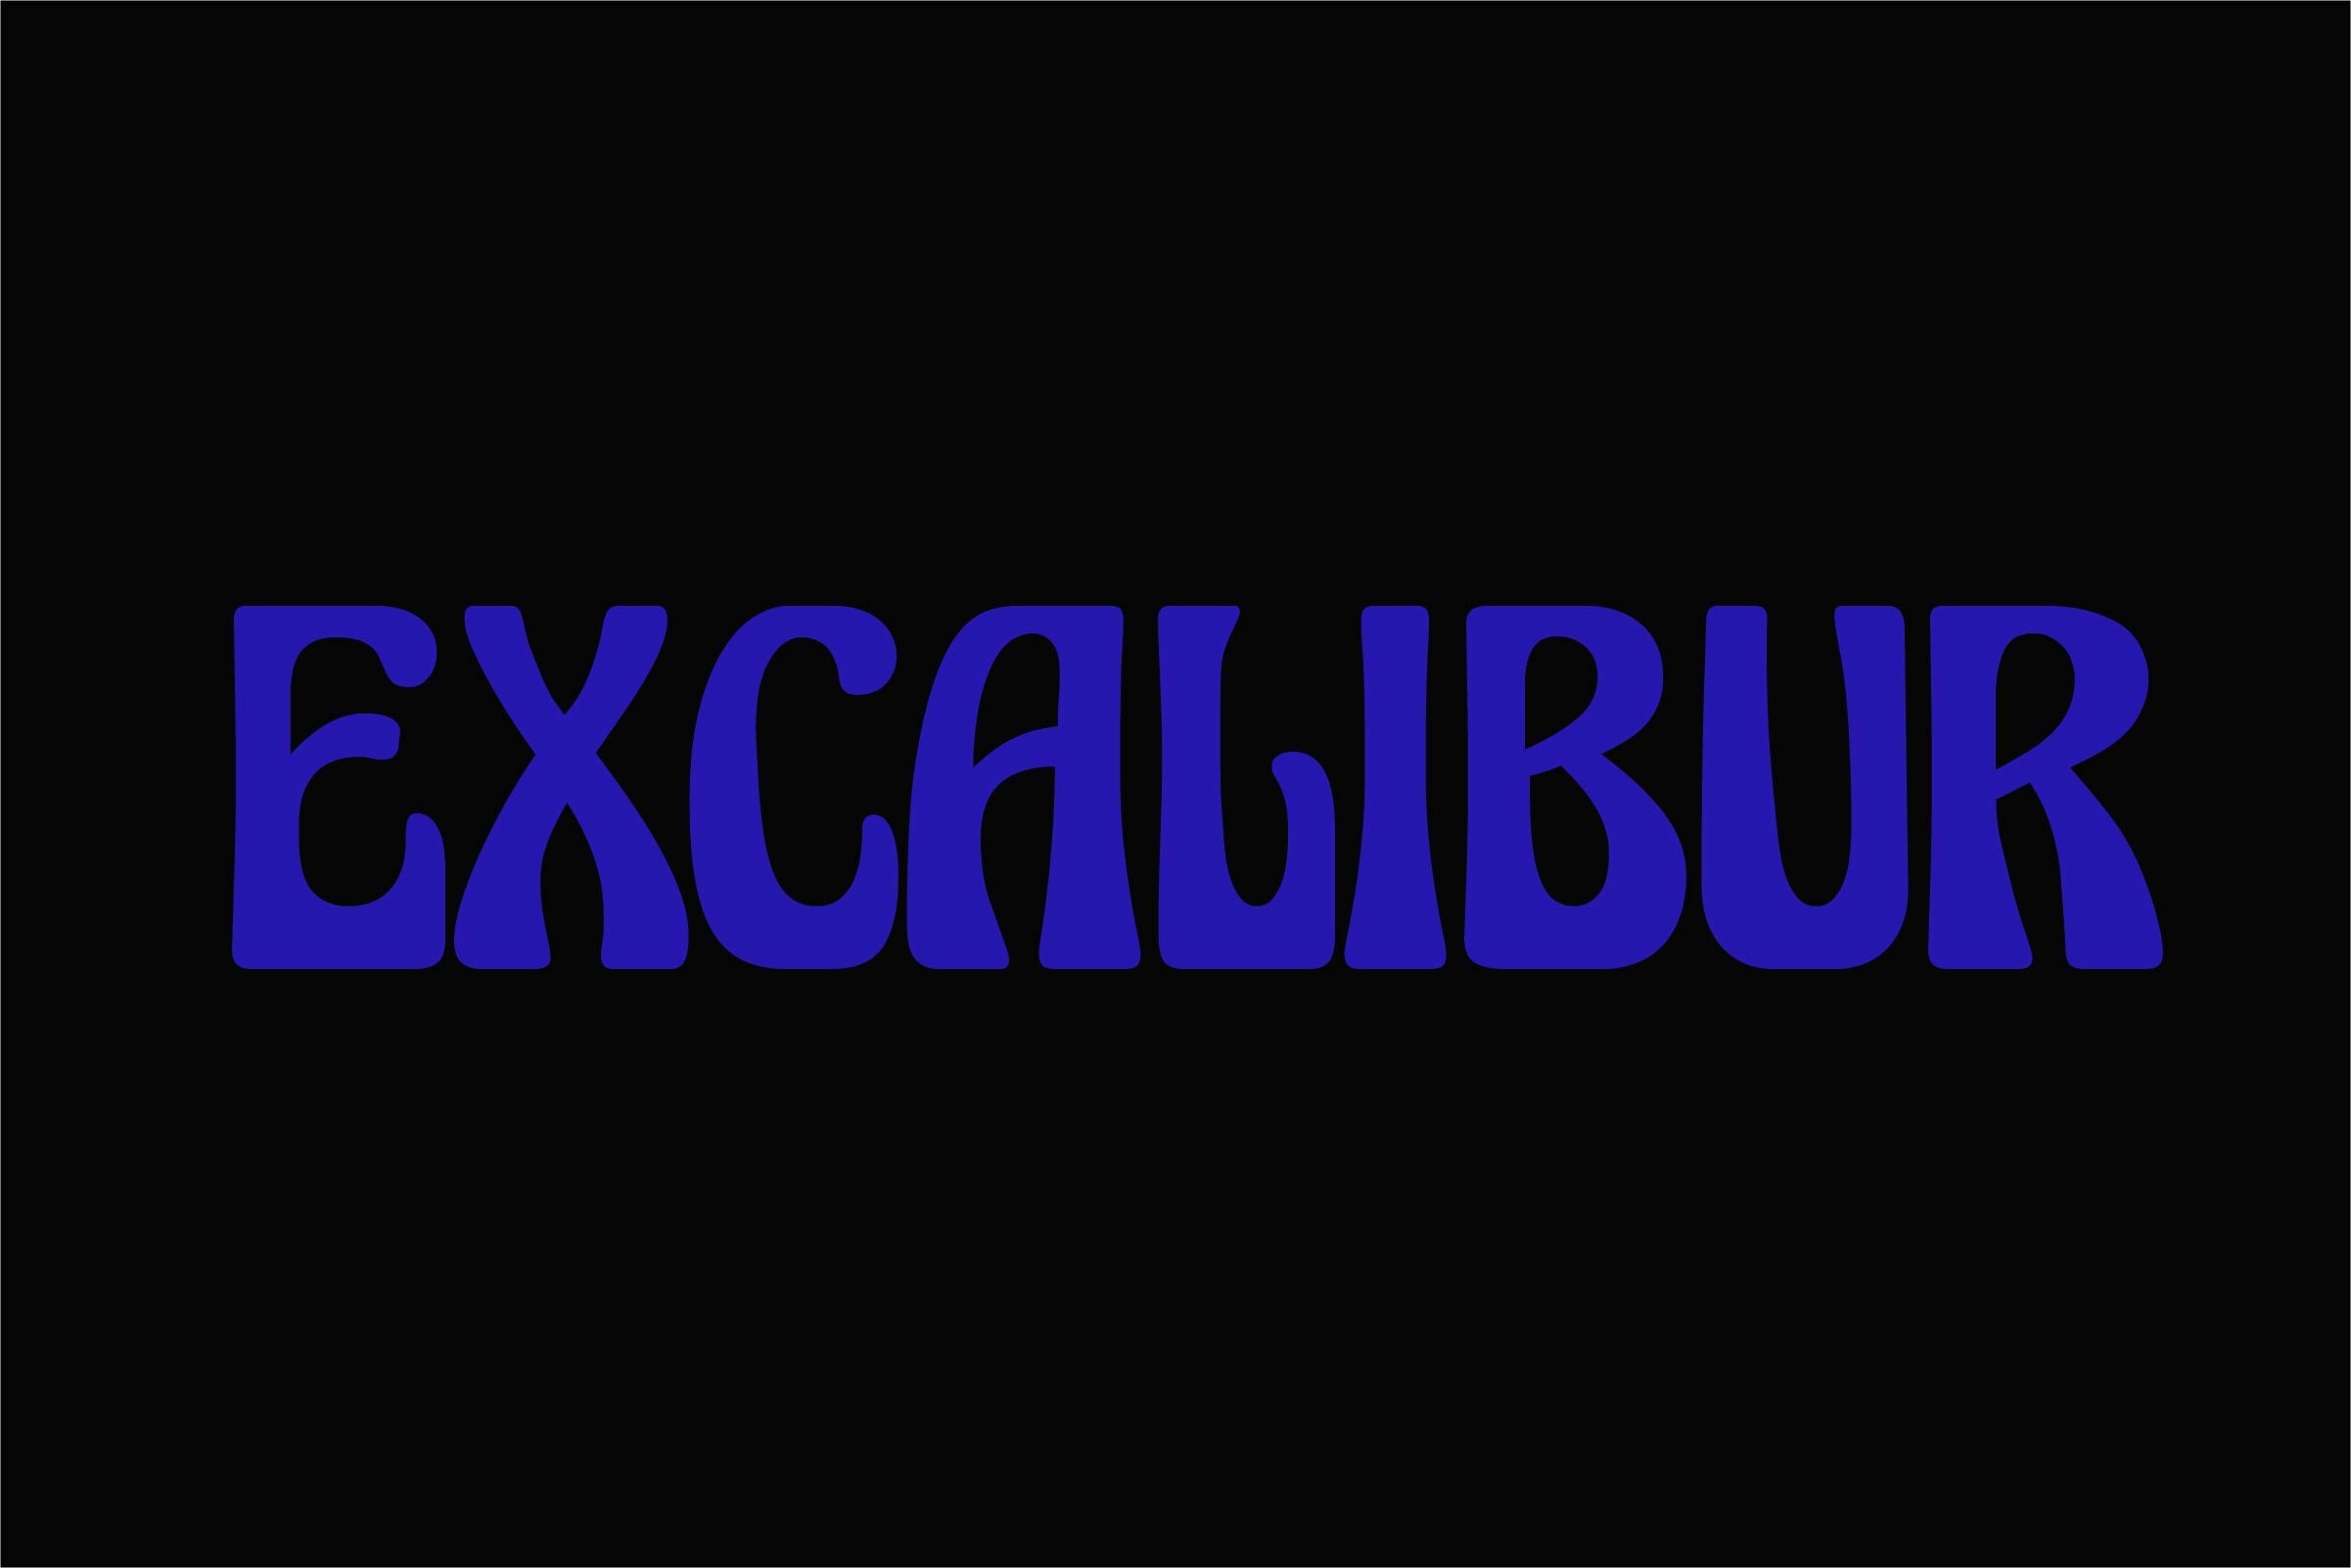 Beispiel einer Excalibur-Schriftart